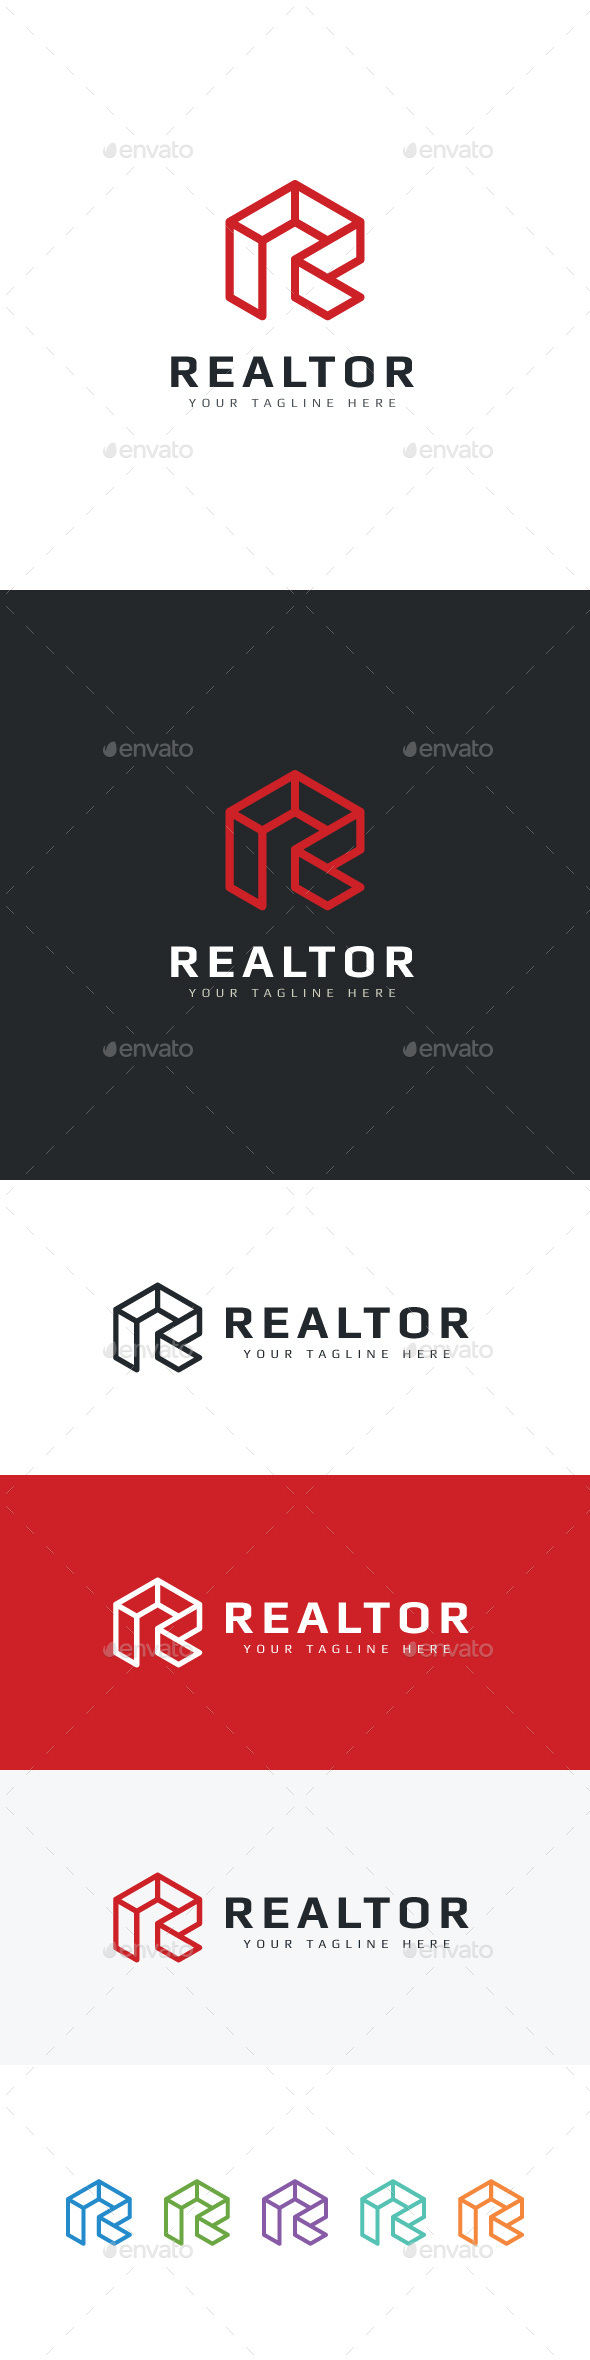 Realtor - Letter R Logo